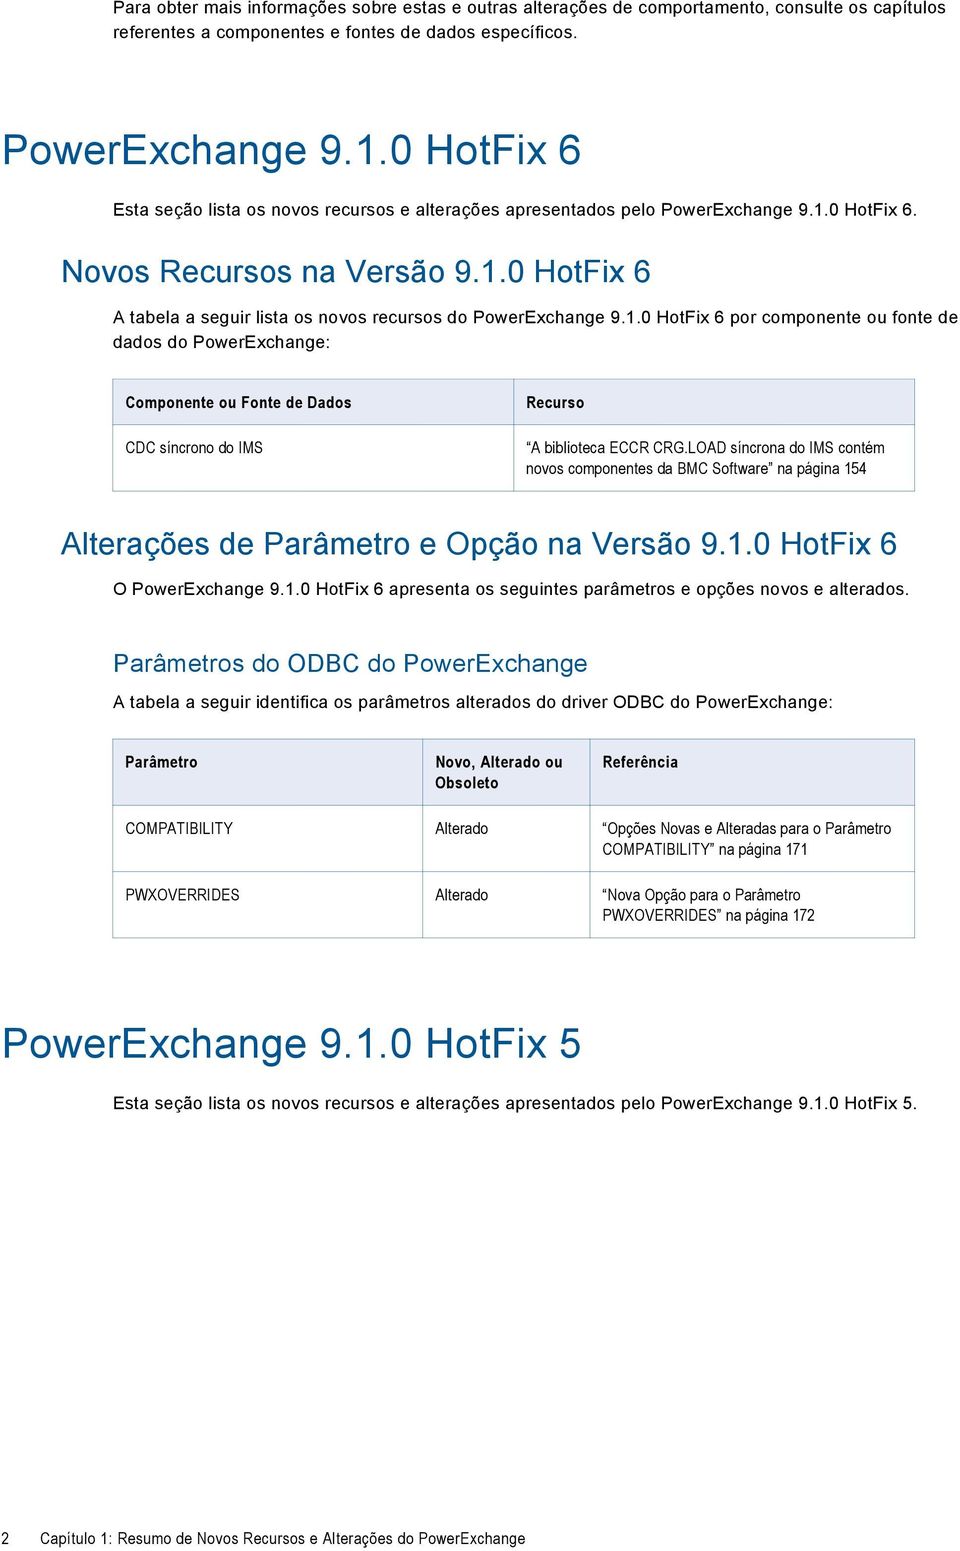 1.0 HotFix 6 por componente ou fonte de dados do PowerExchange: Componente ou Fonte de Dados CDC síncrono do IMS Recurso A biblioteca ECCR CRG.